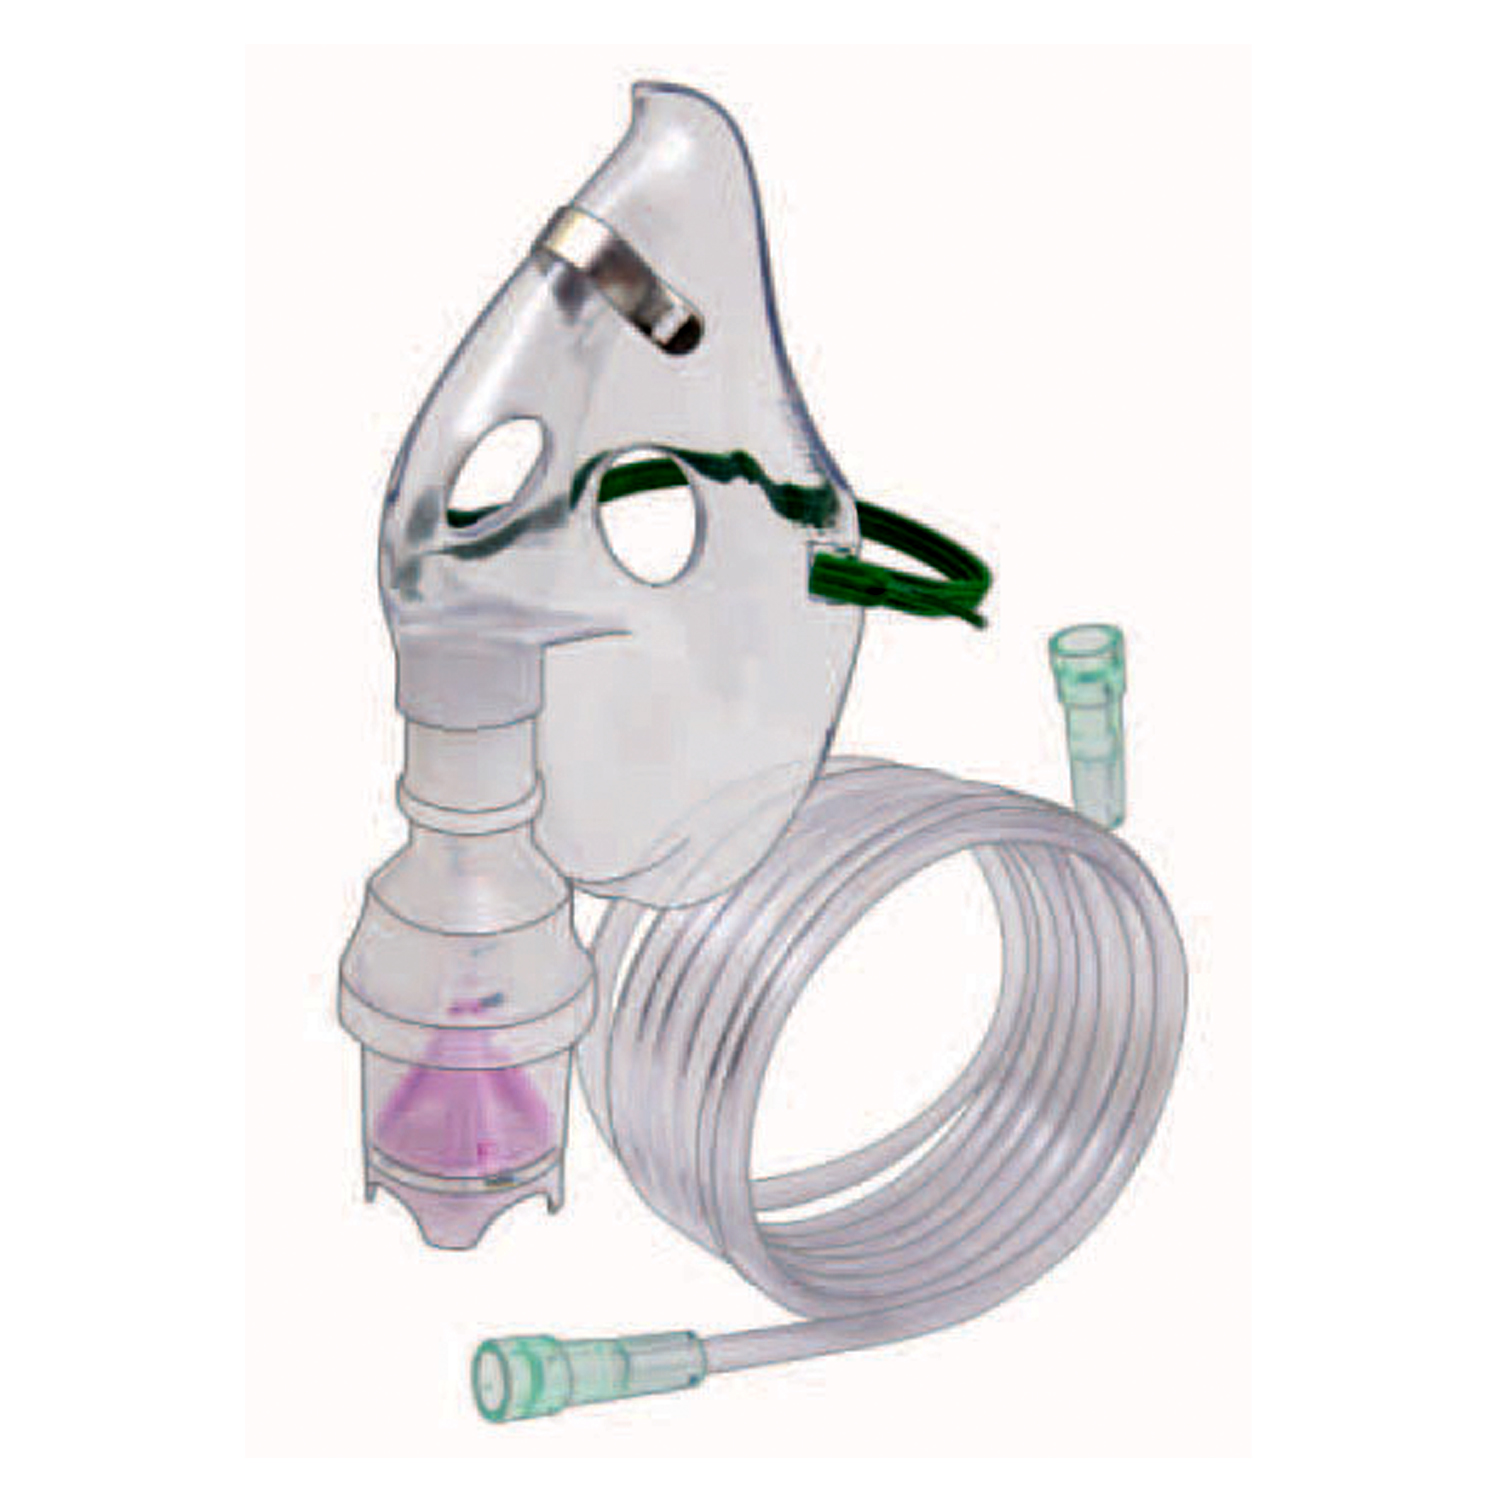 Nebulizer Kit With Adult Aerosol Mask - 7ft Oxygen Tubing - 50 Units